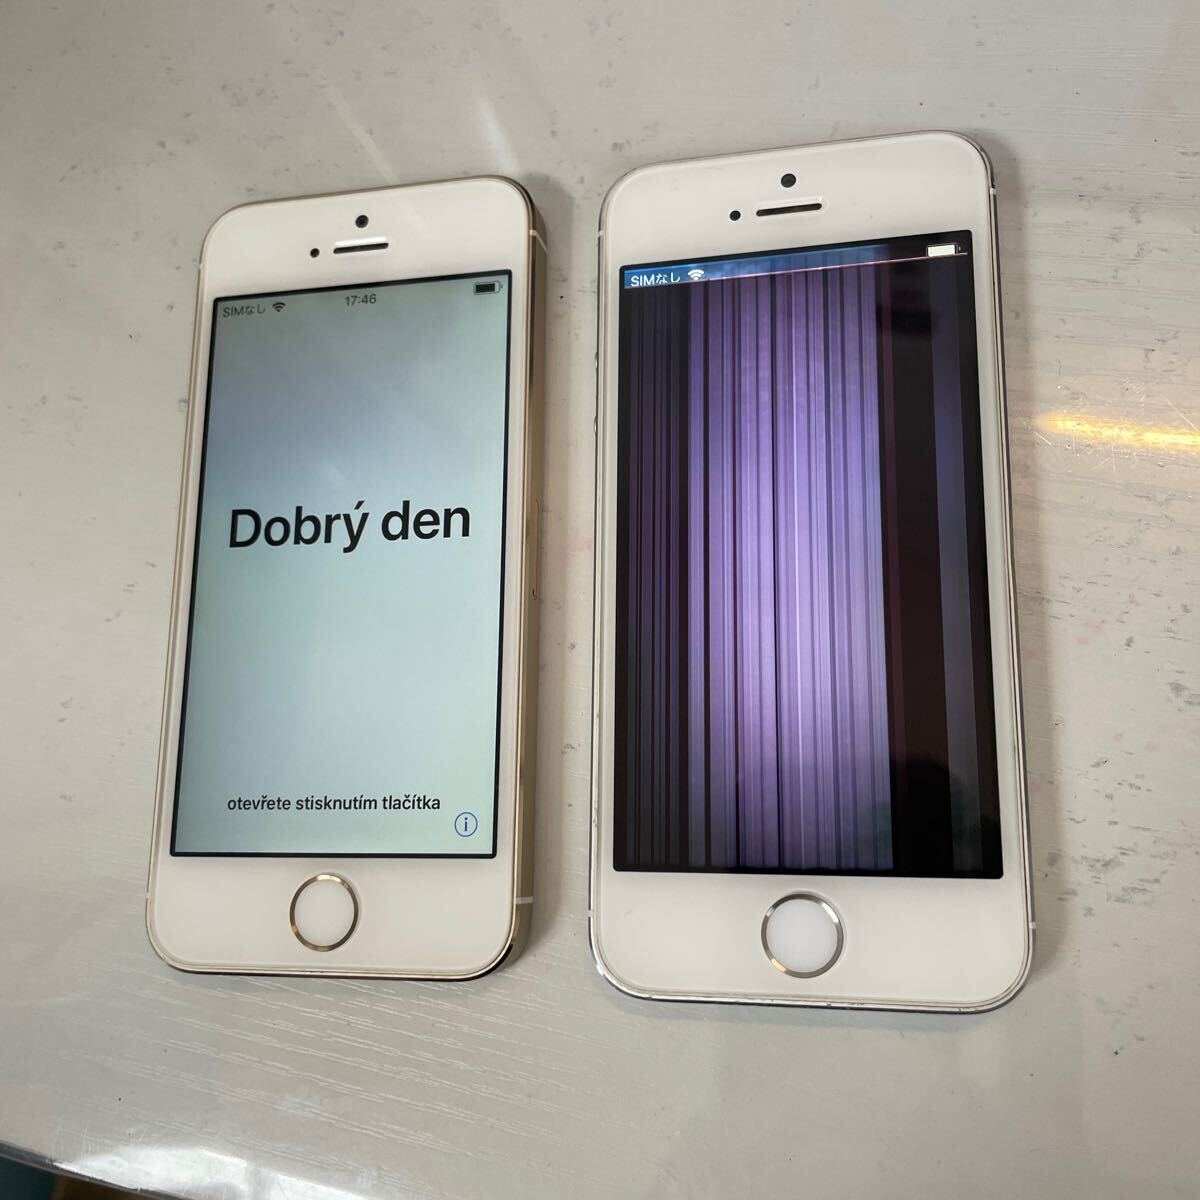 Apple（アップル ）iPhone5s ゴールド シルバー 2台セット アップル アイフォン ジャンクの画像1